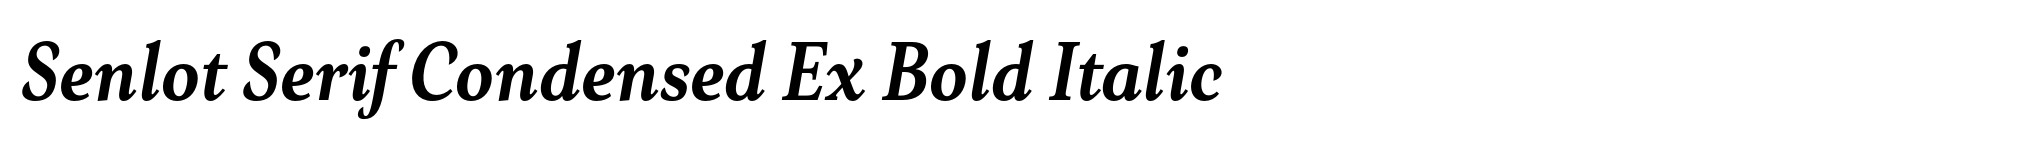 Senlot Serif Condensed Ex Bold Italic image